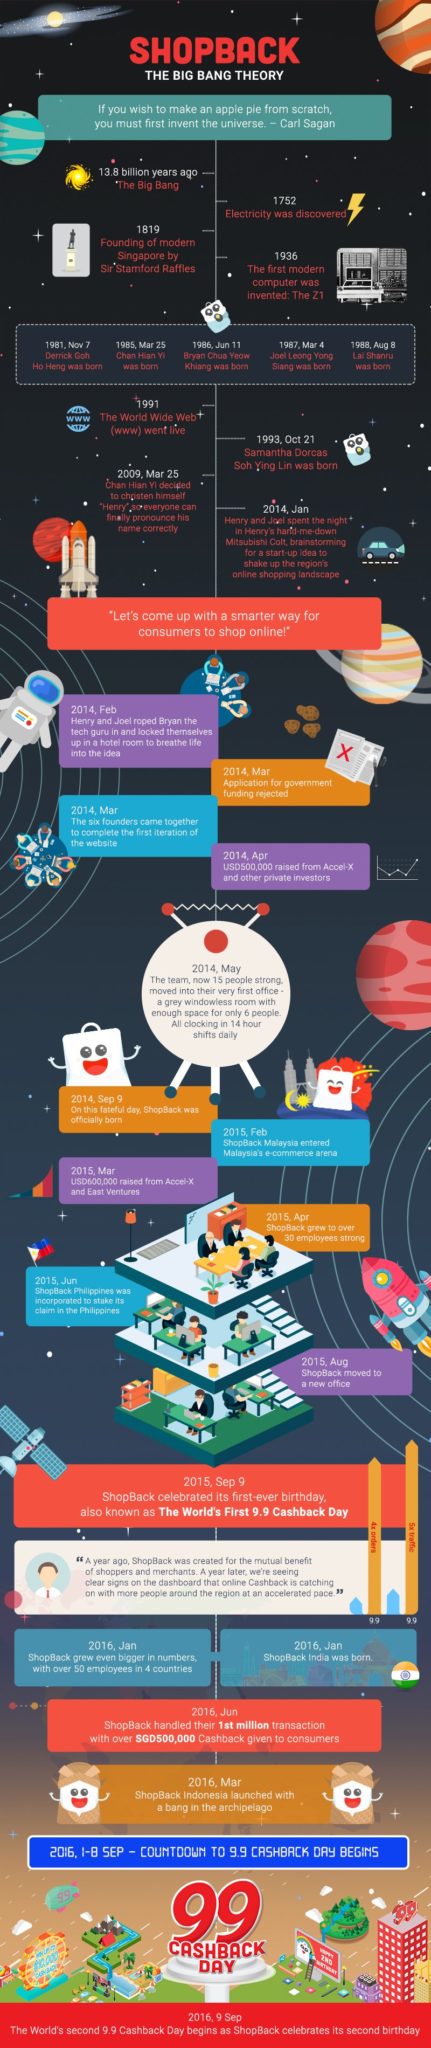 The ShopBack Big Bang Theory Infographic